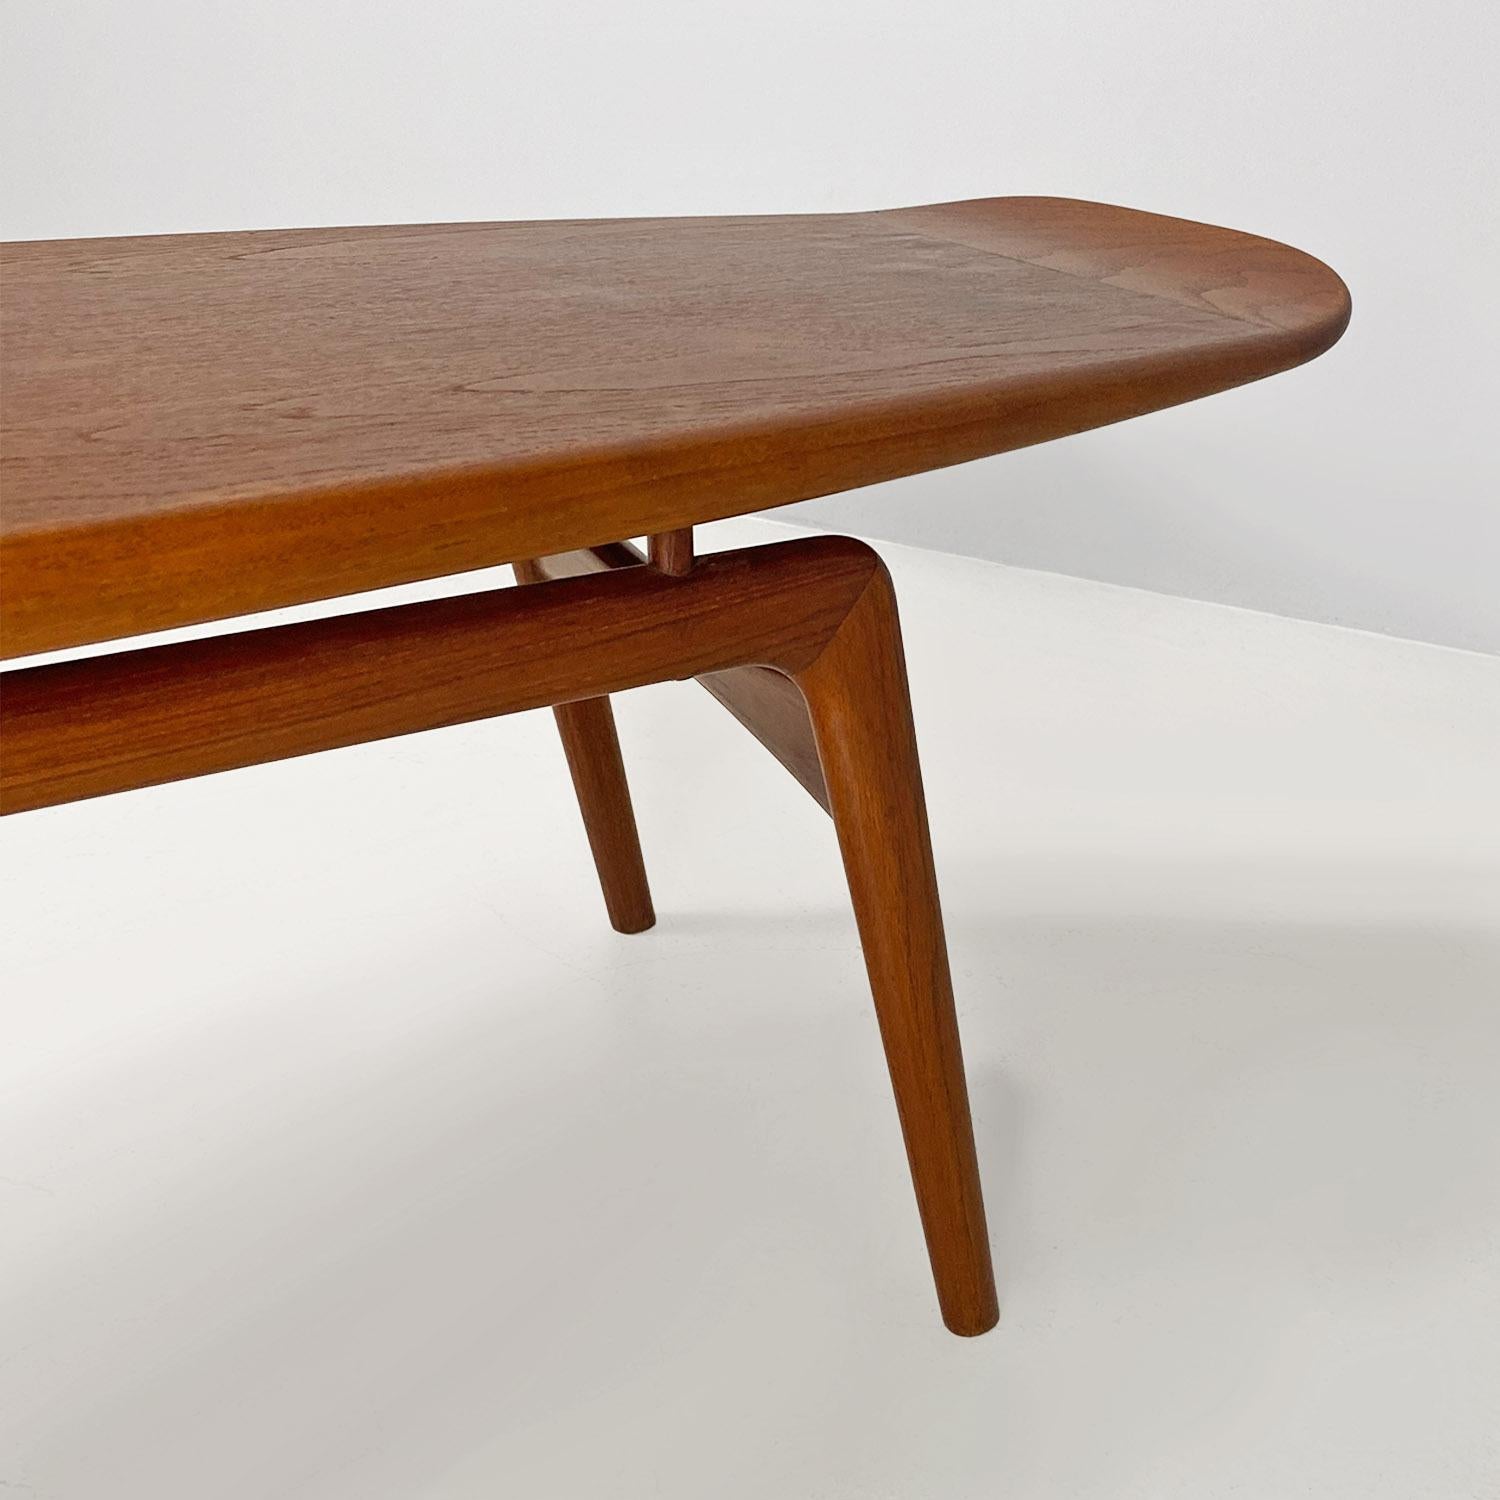 Danish mid-century teak surfboard table by Hovmand-Olsen for Mogens Kold, 1960s For Sale 1